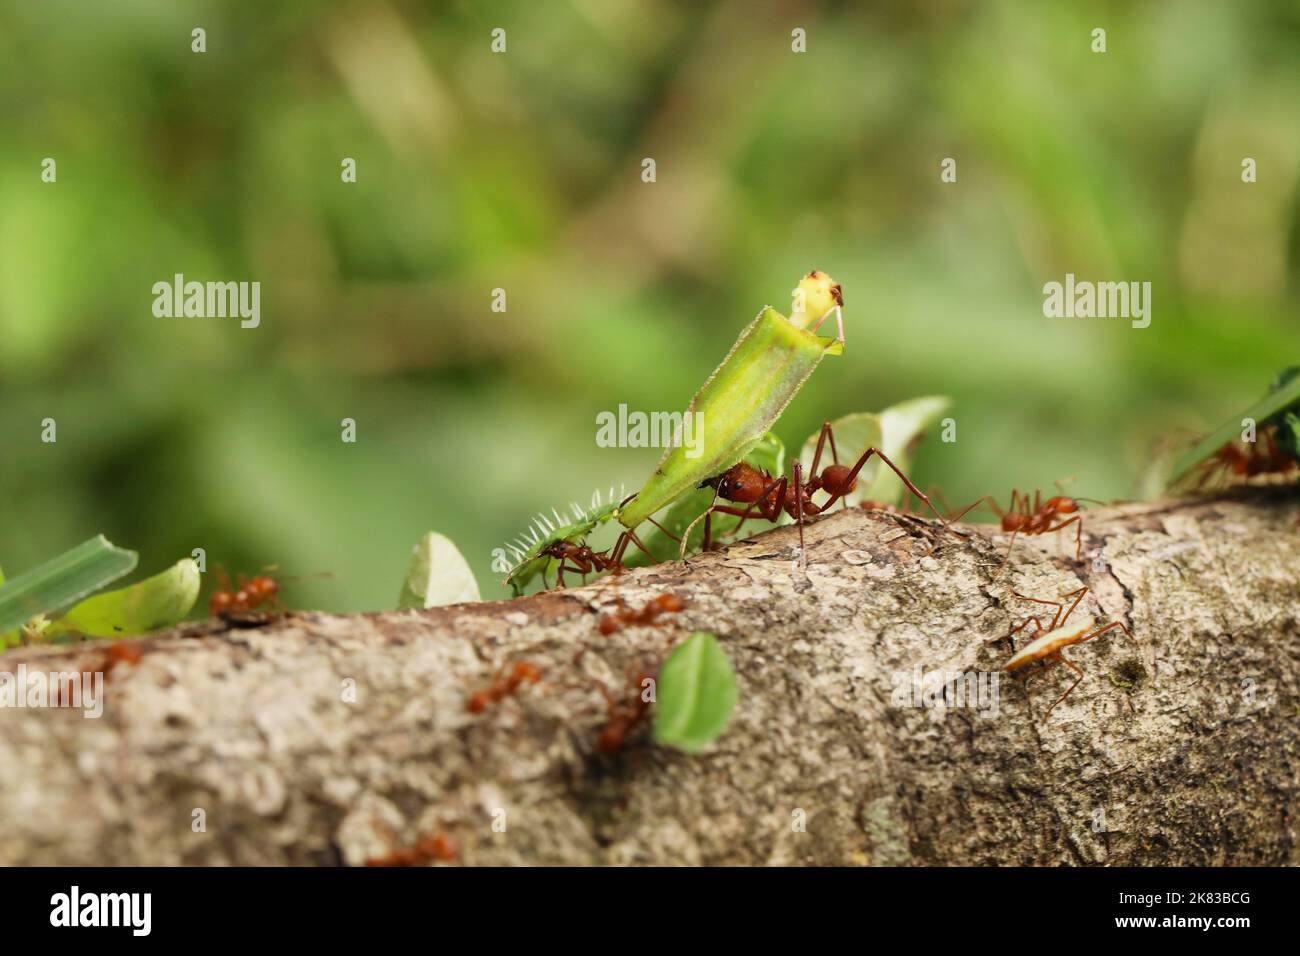 Leaf-Cutter Ant, atta sp., adulte transportant segment foliaire de fourmilière, Costa Rica Banque D'Images